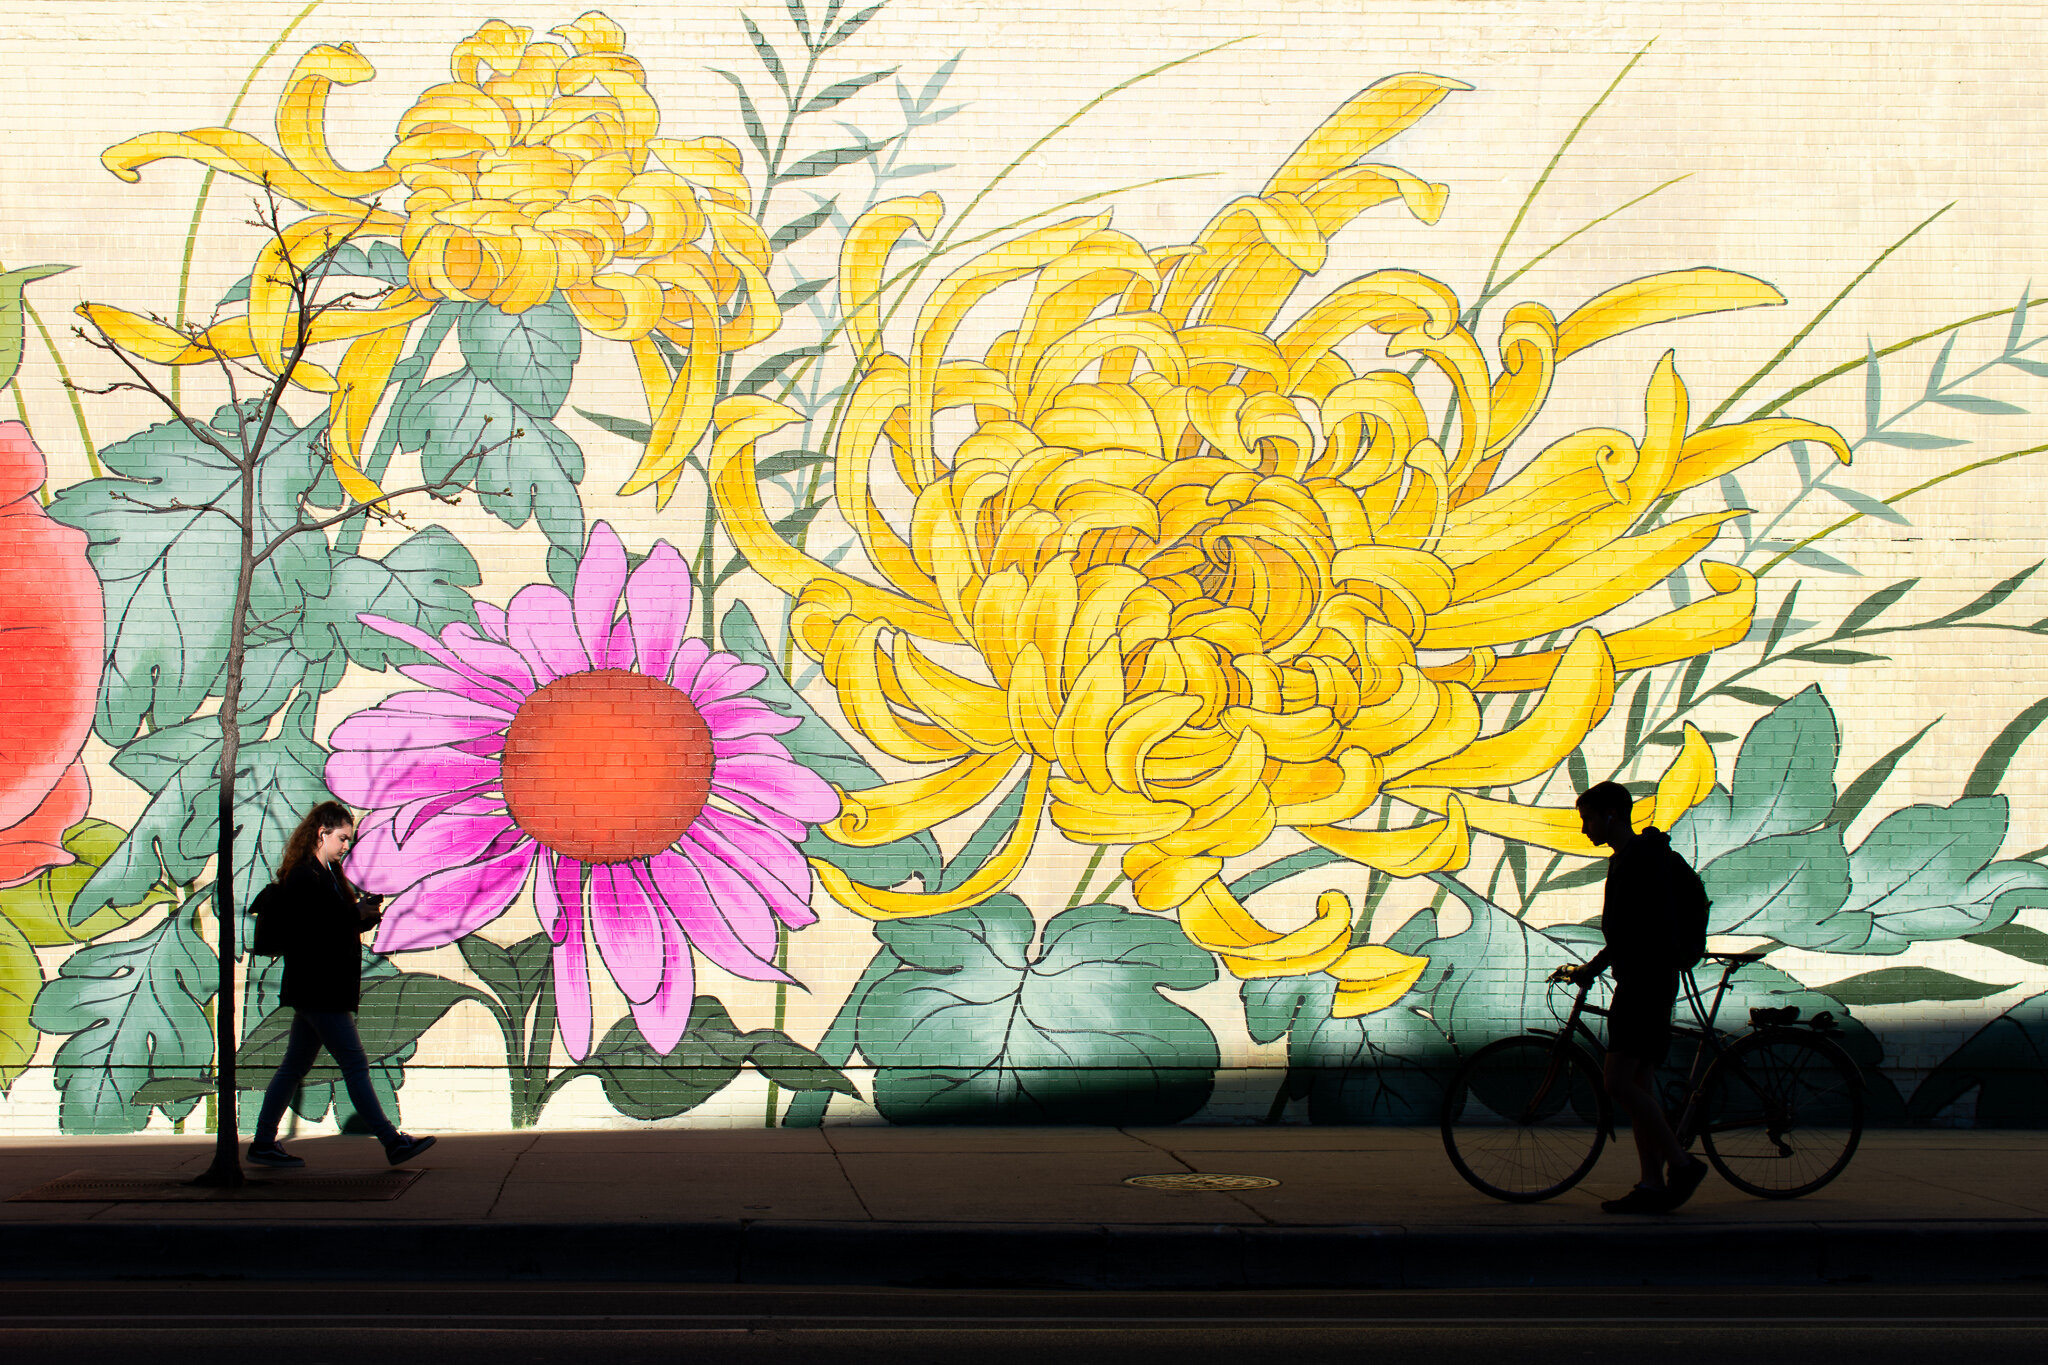 奥尔托的城市，路易斯·琼斯(Louise“Ouizi”Jones) (2019): 3637 N. 南安普顿的大街 |位于Southport走廊中心，距离Wrigley Field仅几个街区, 奥尔托的城市是一幅大胆的新壁画，它融合了美国中西部地区发现的五颜六色的花朵 